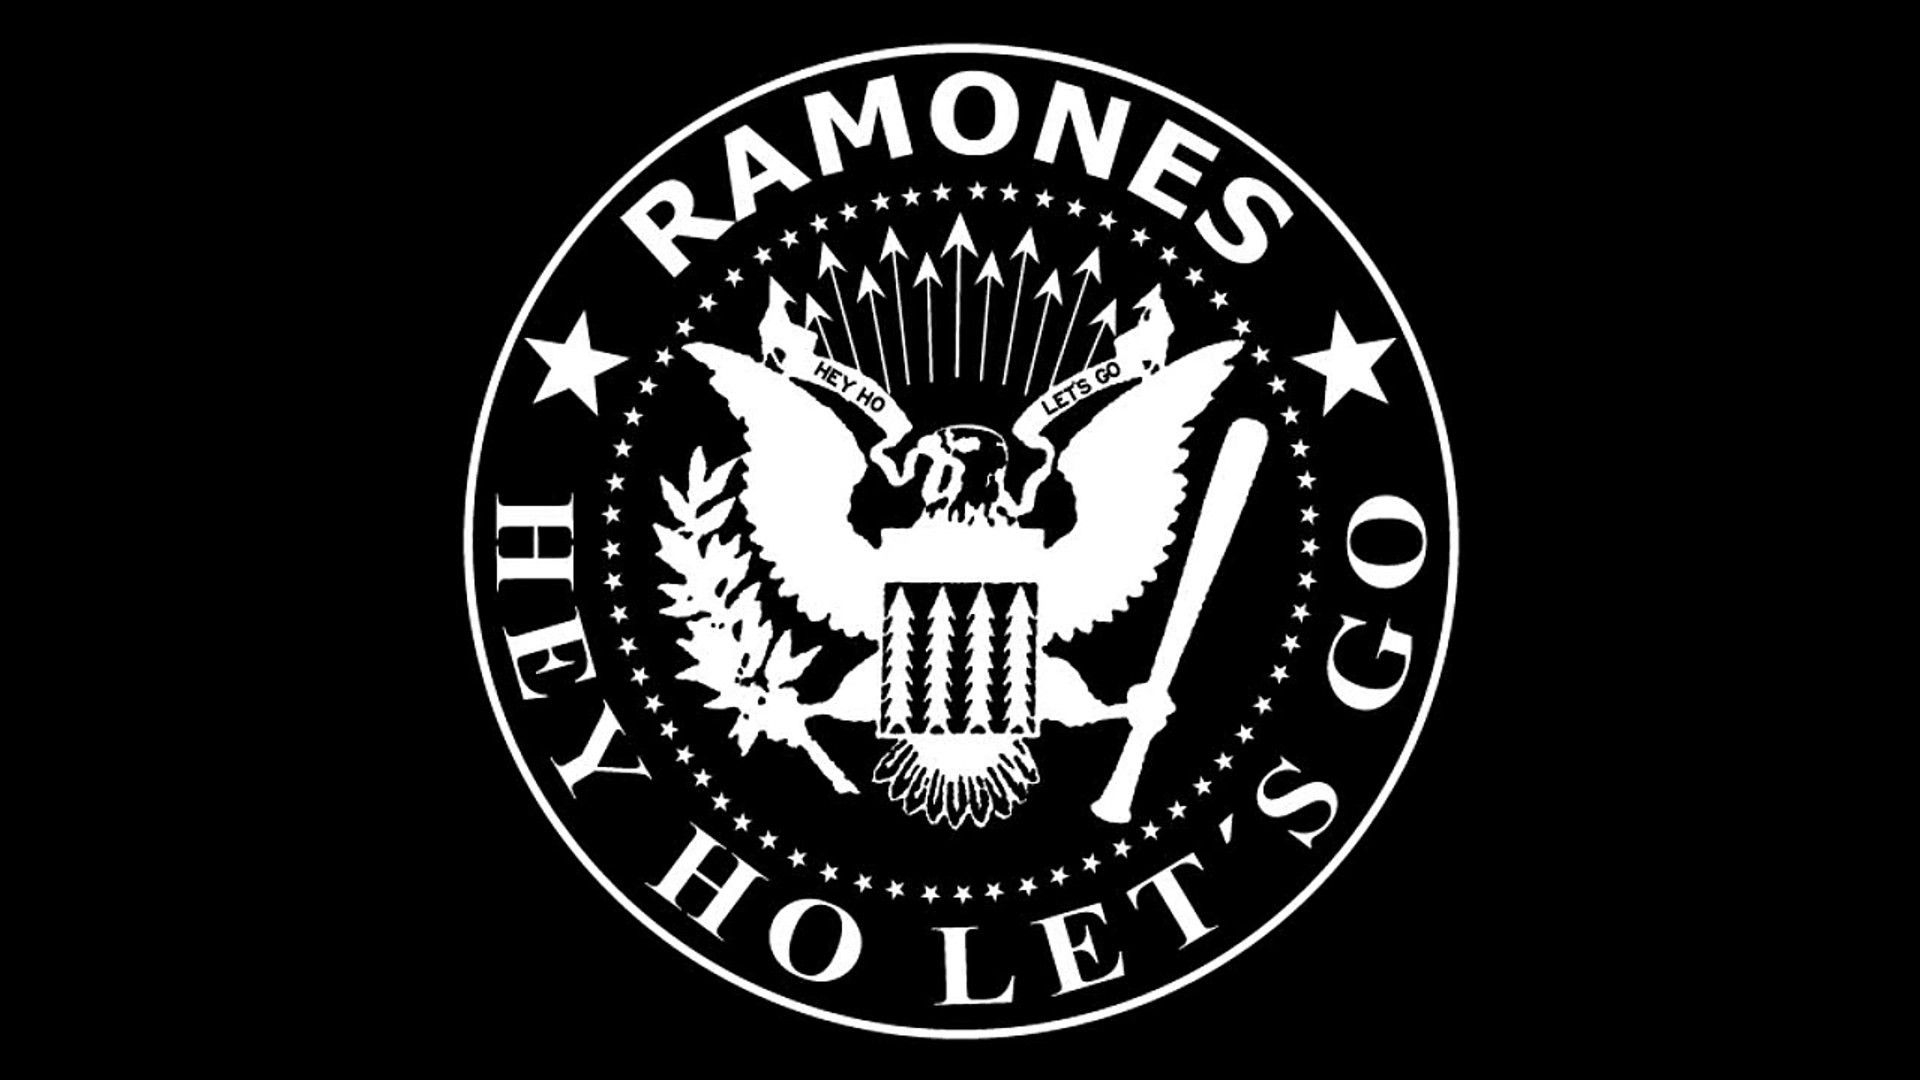 1920x1080 Ramones Wallpapers Top Free Ramones Backgrounds